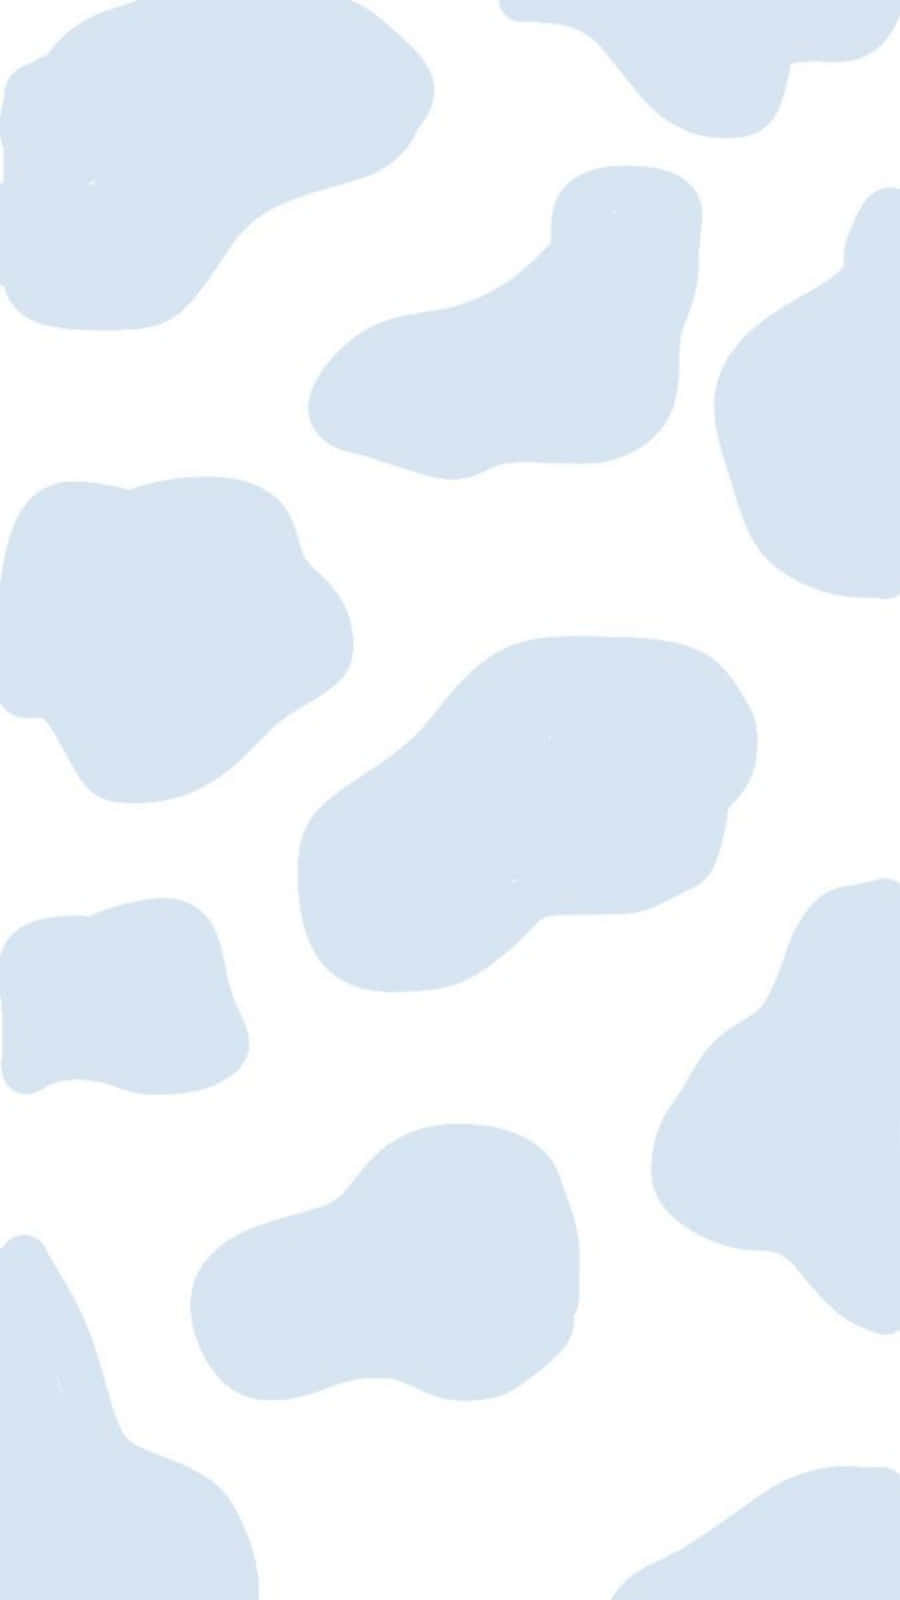 En hvid kø med blå pletter – Velkommende og munter Wallpaper